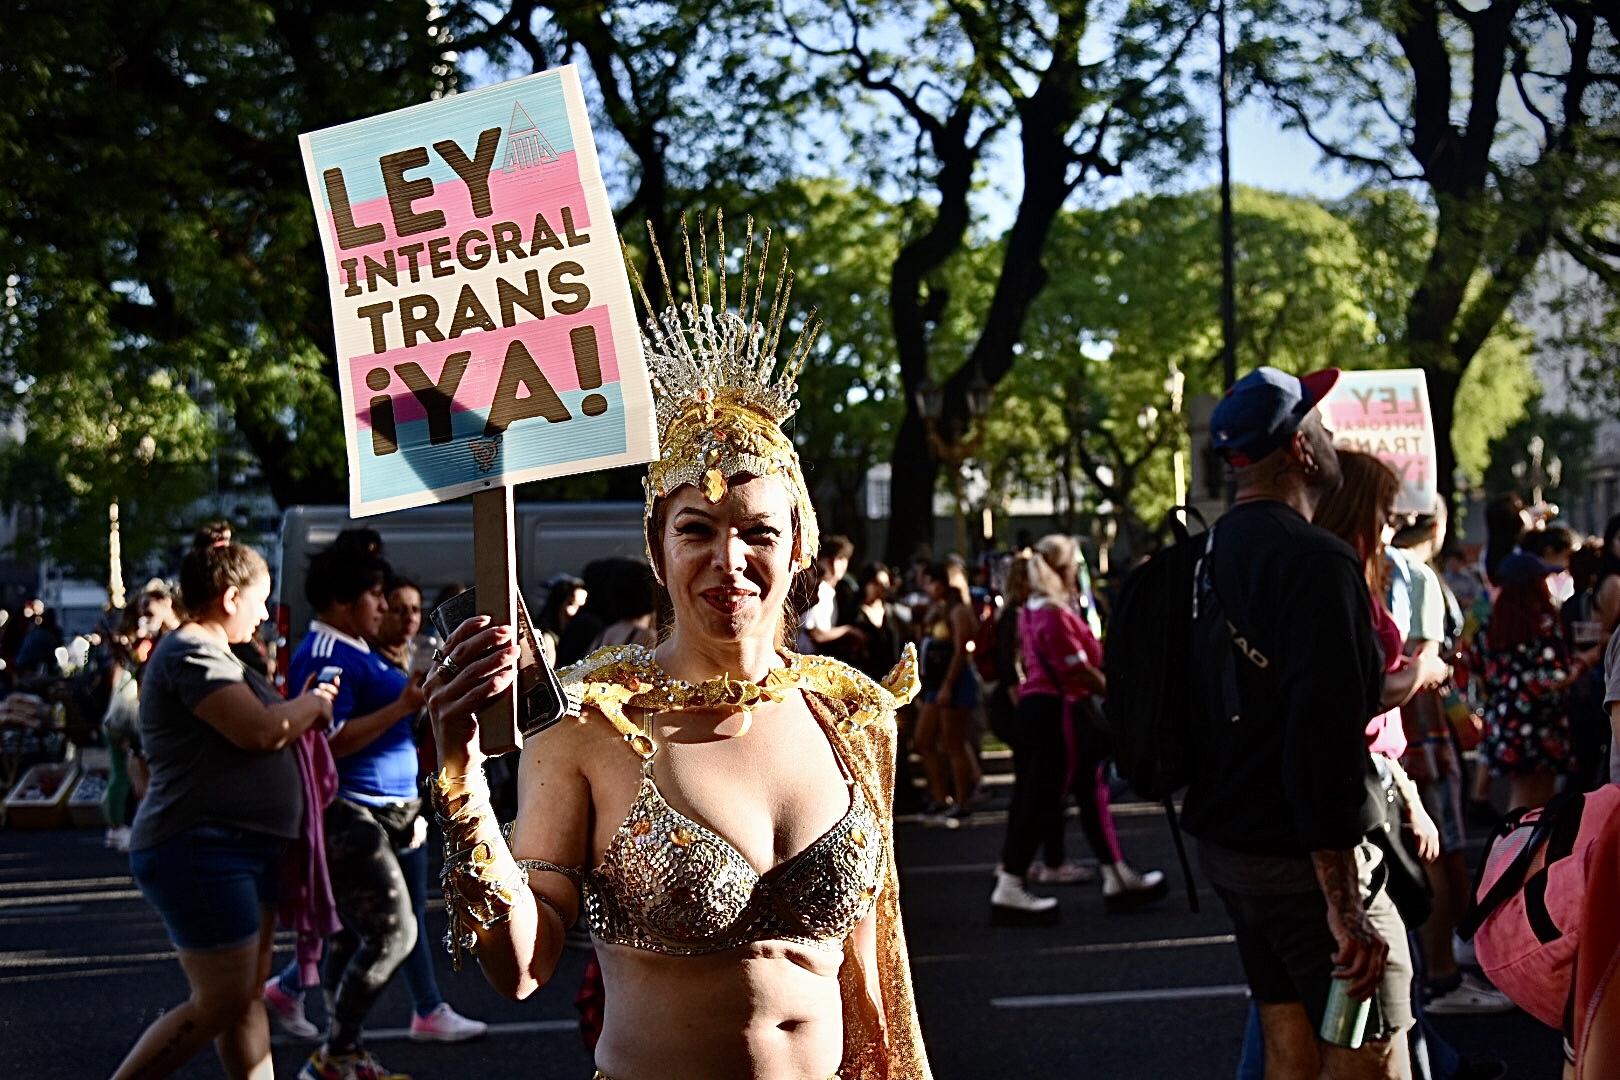 La ley integral trans es una iniciativa que procura se garantice la inclusión social y los derechos en igualdad de condiciones para la población trans (Crédito: Ariel Torres)